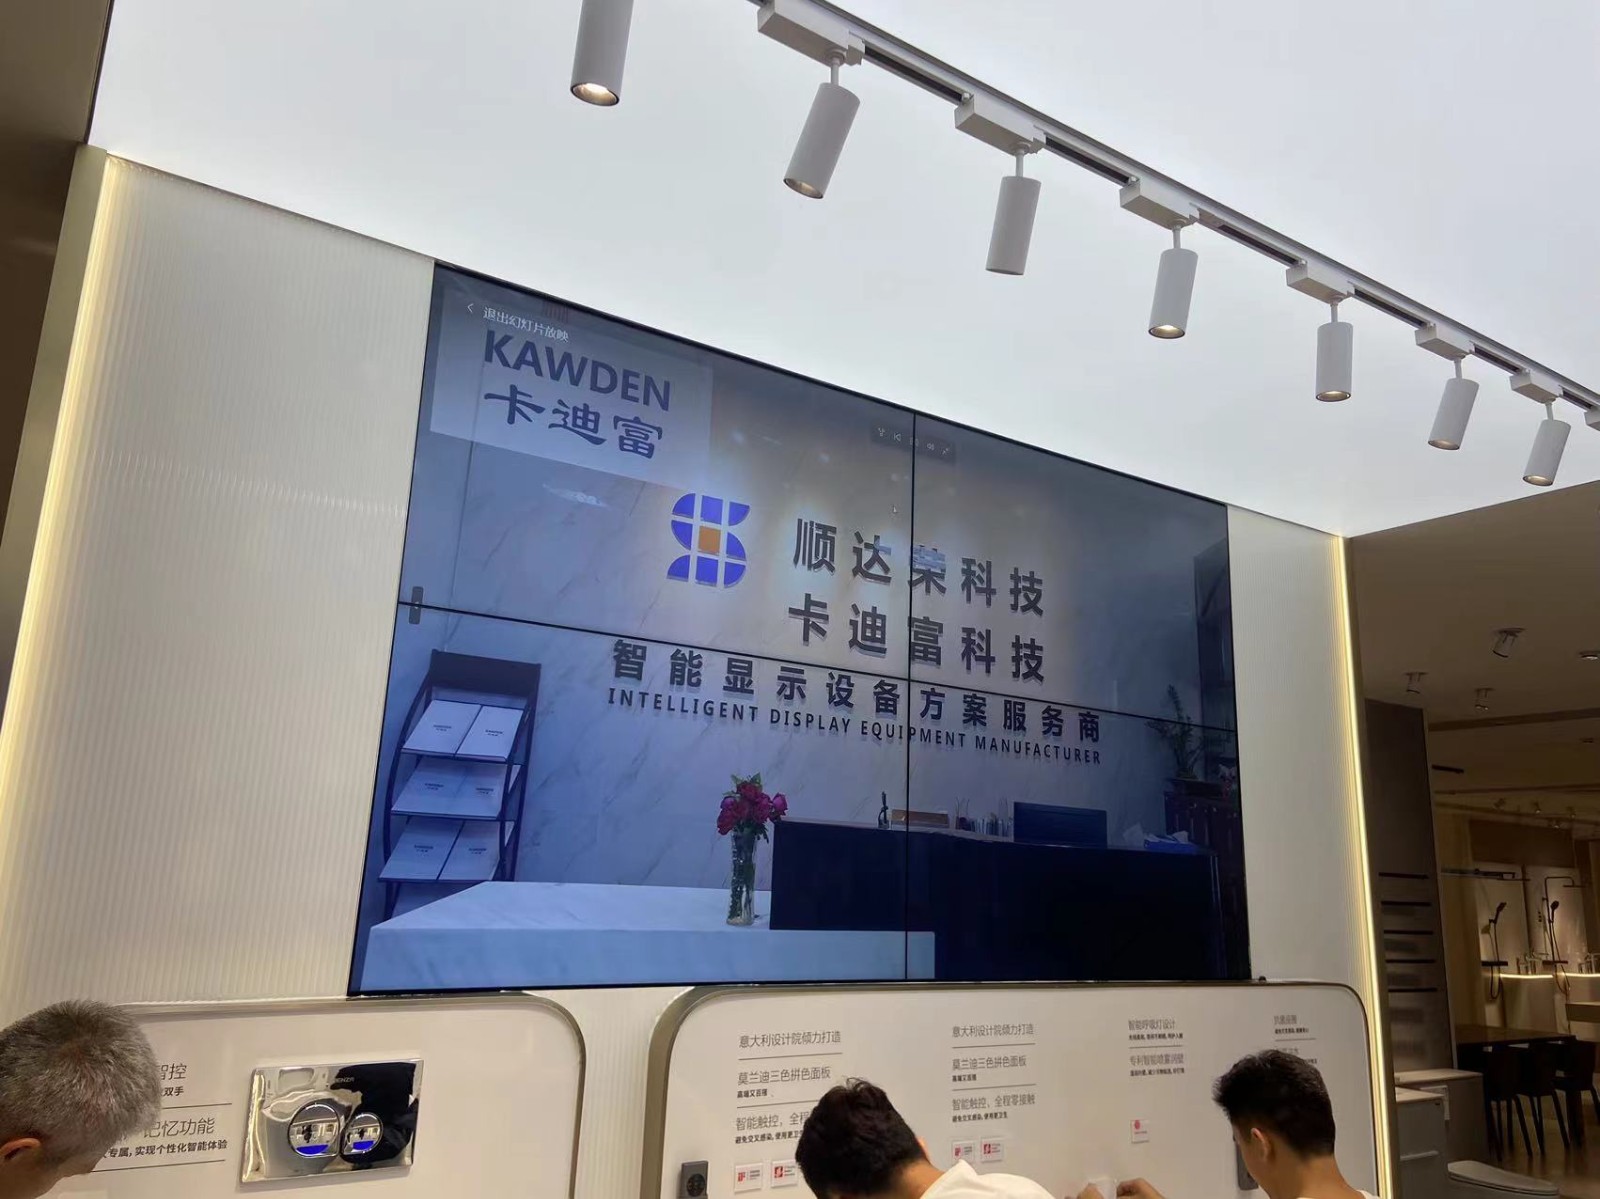 深圳市福田区法恩莎卫浴展示厅安装ray竞技app
大屏幕案例